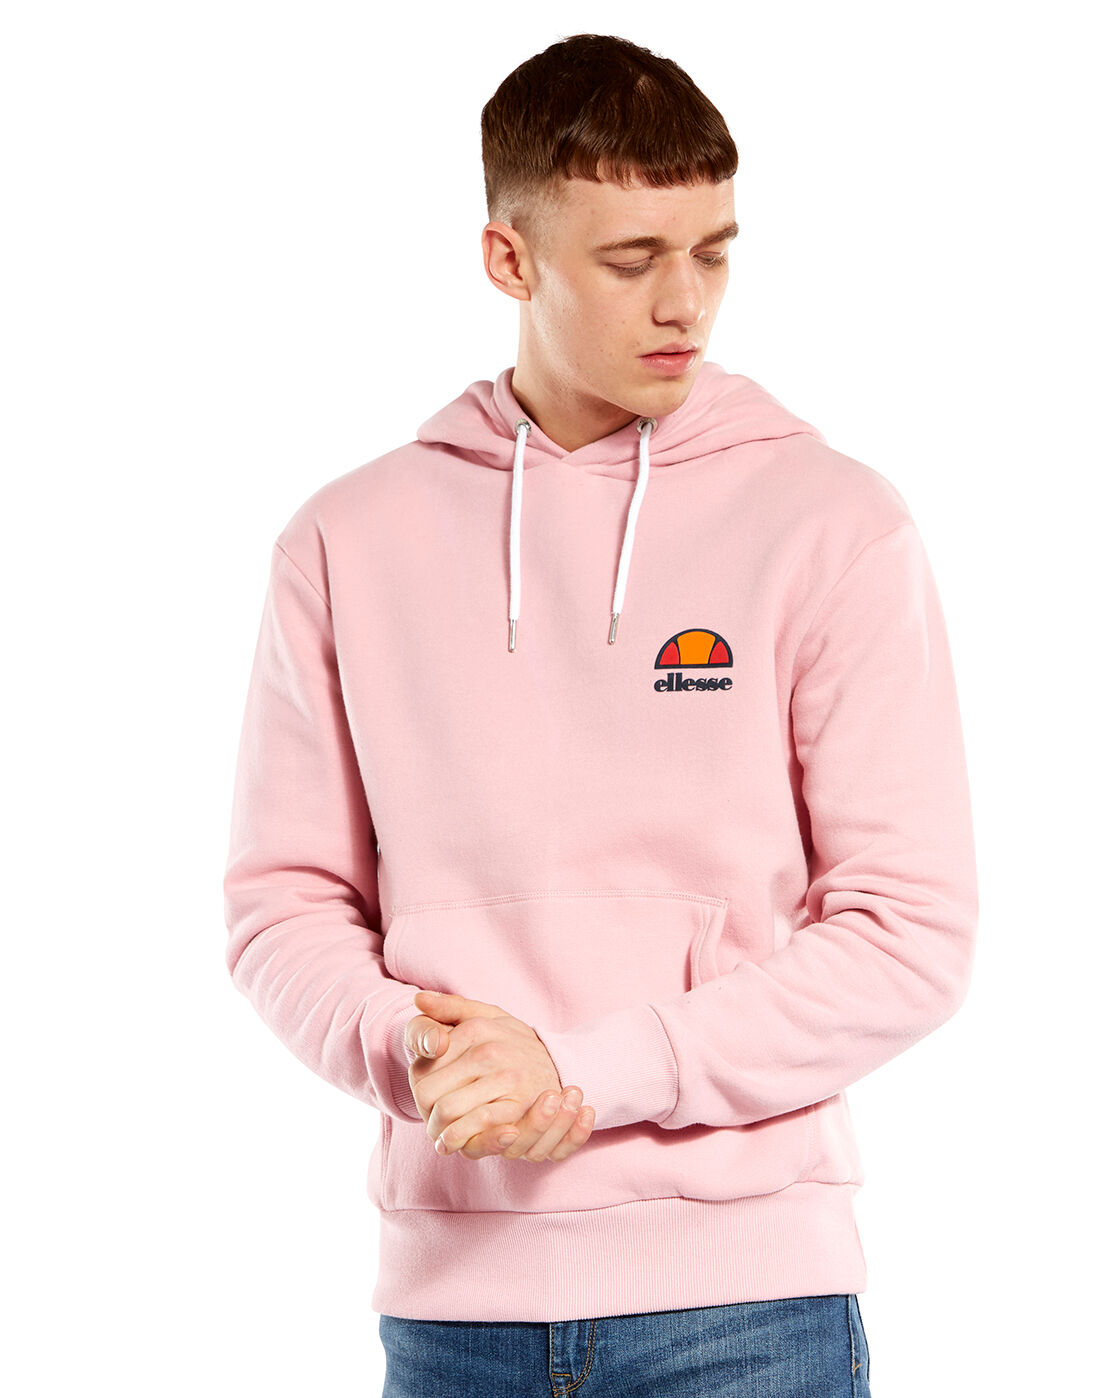 ellesse hoodie pink